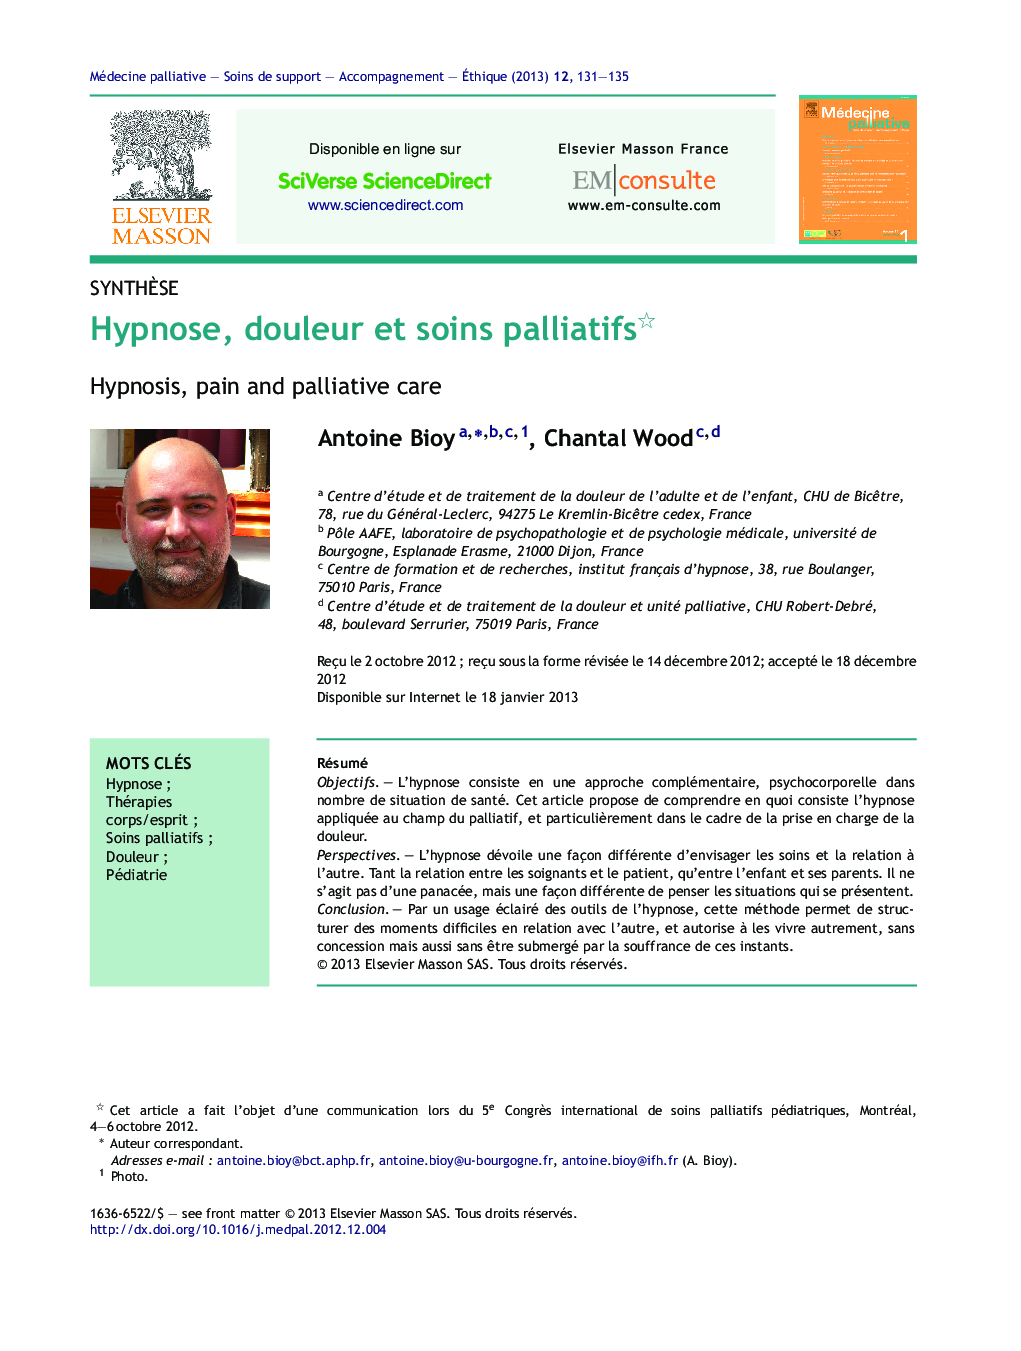 Hypnose, douleur et soins palliatifs